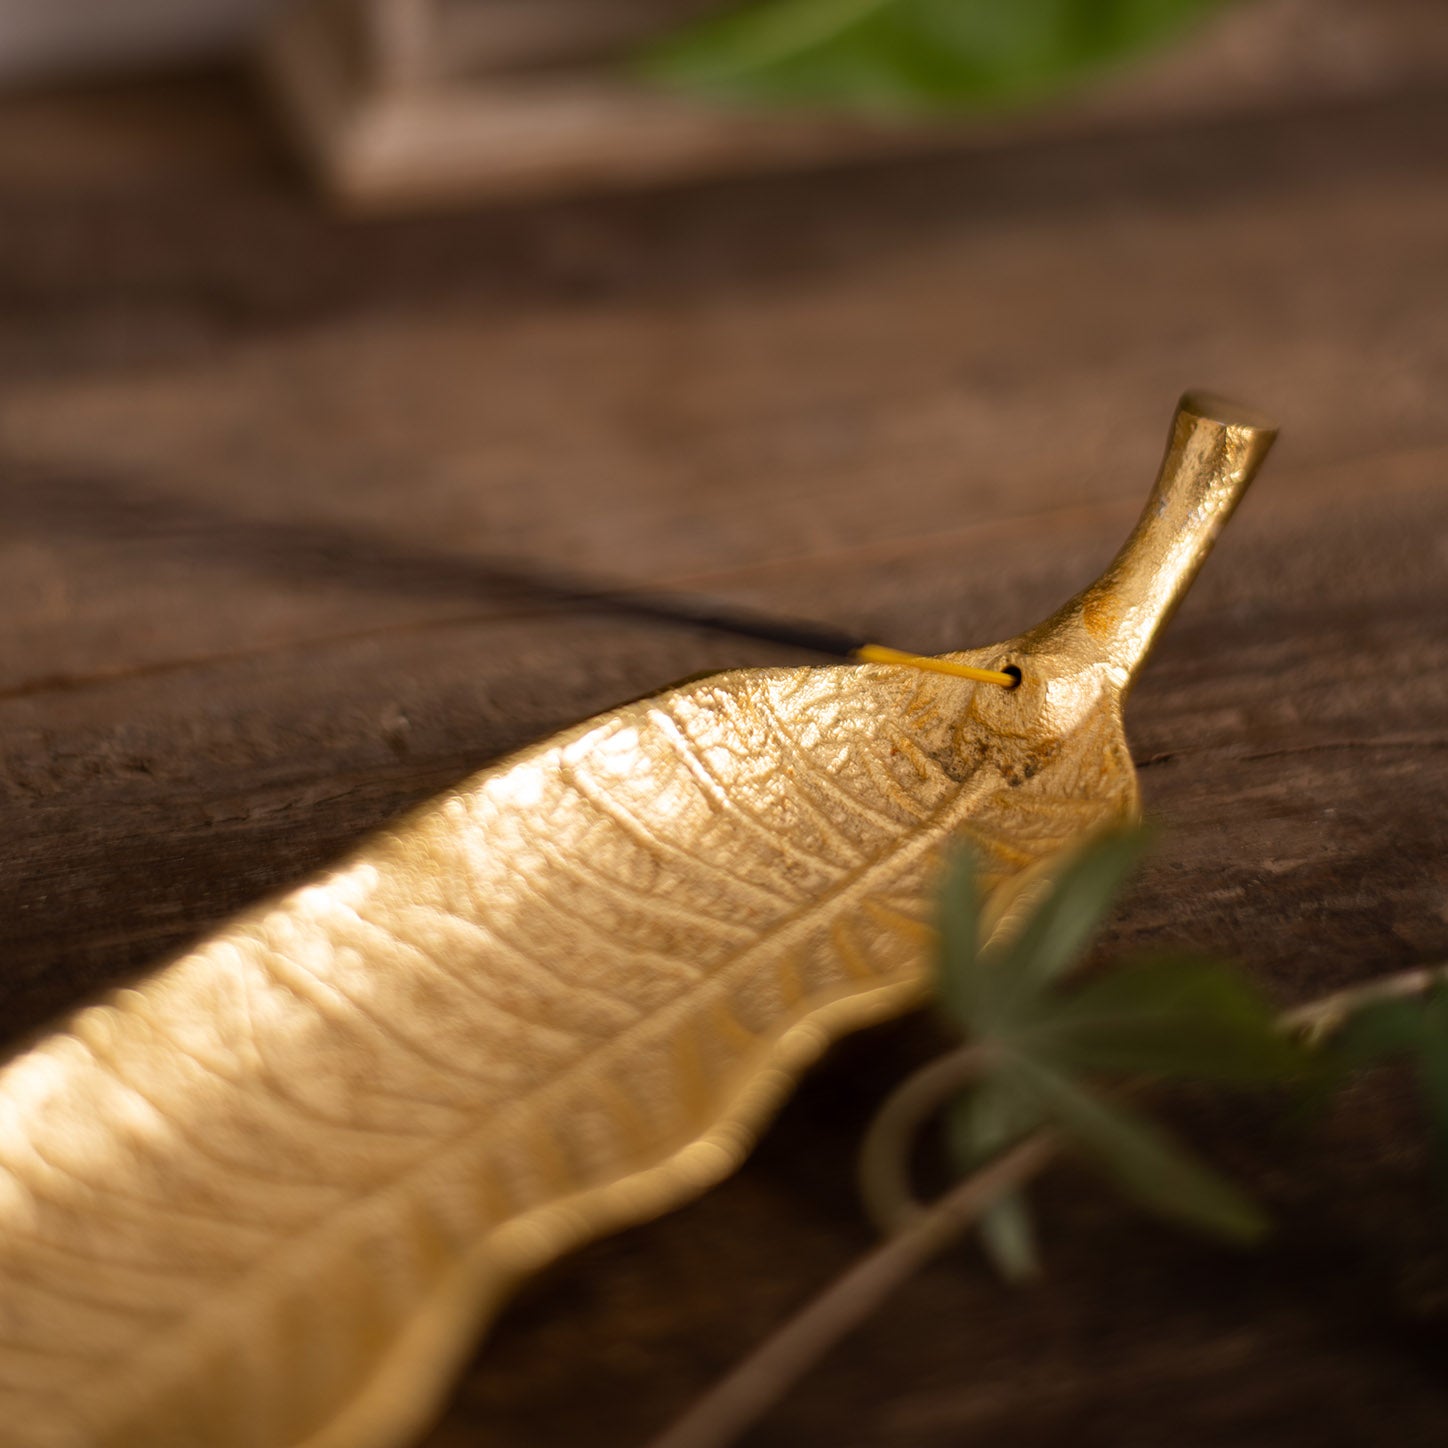 Gold Leaf Incense Holder